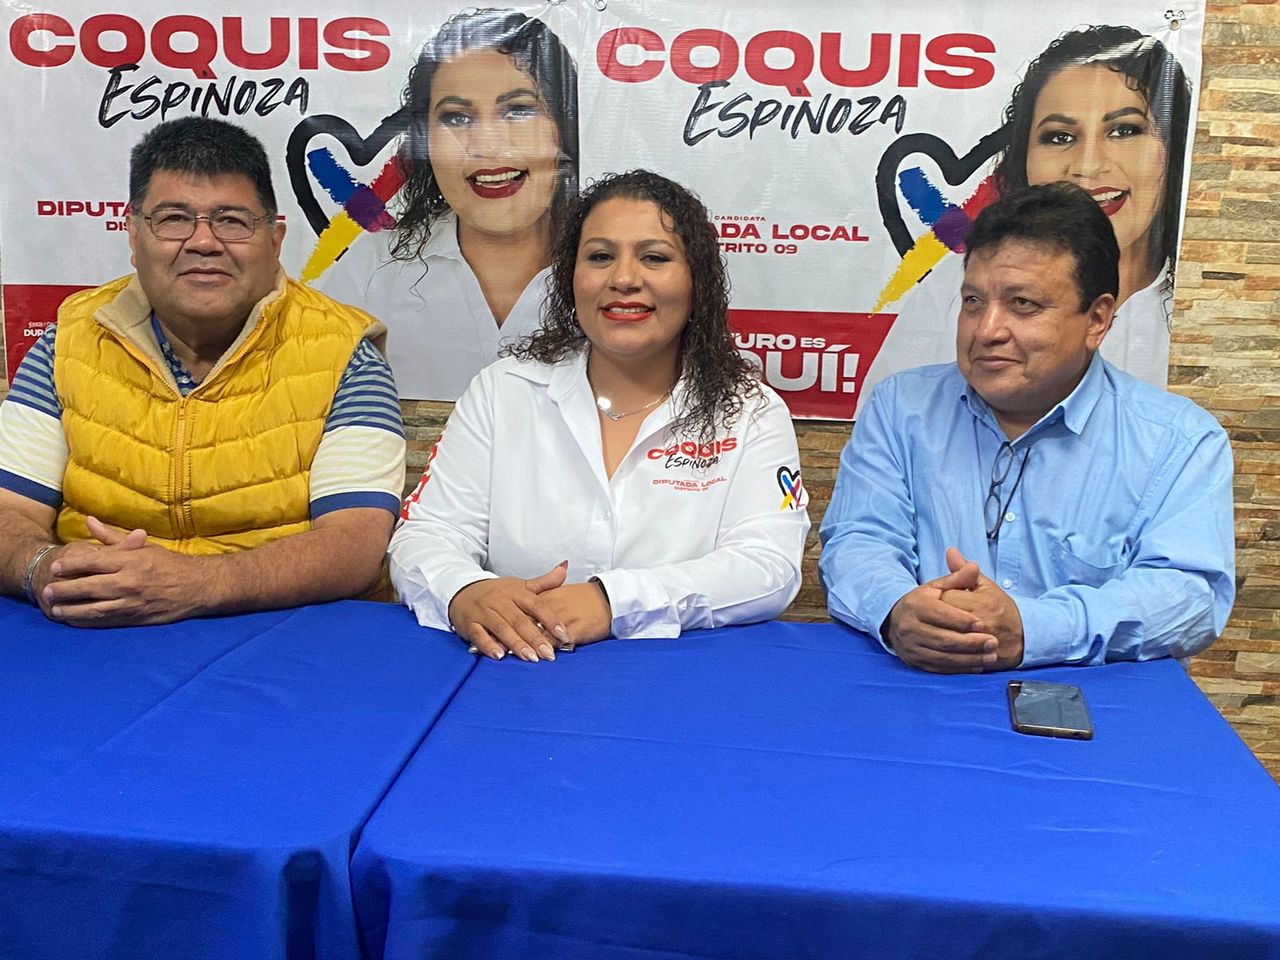 La candidata a diputada local arrancó campaña desde la cabecera distrital, que es el municipio de Mapimí.